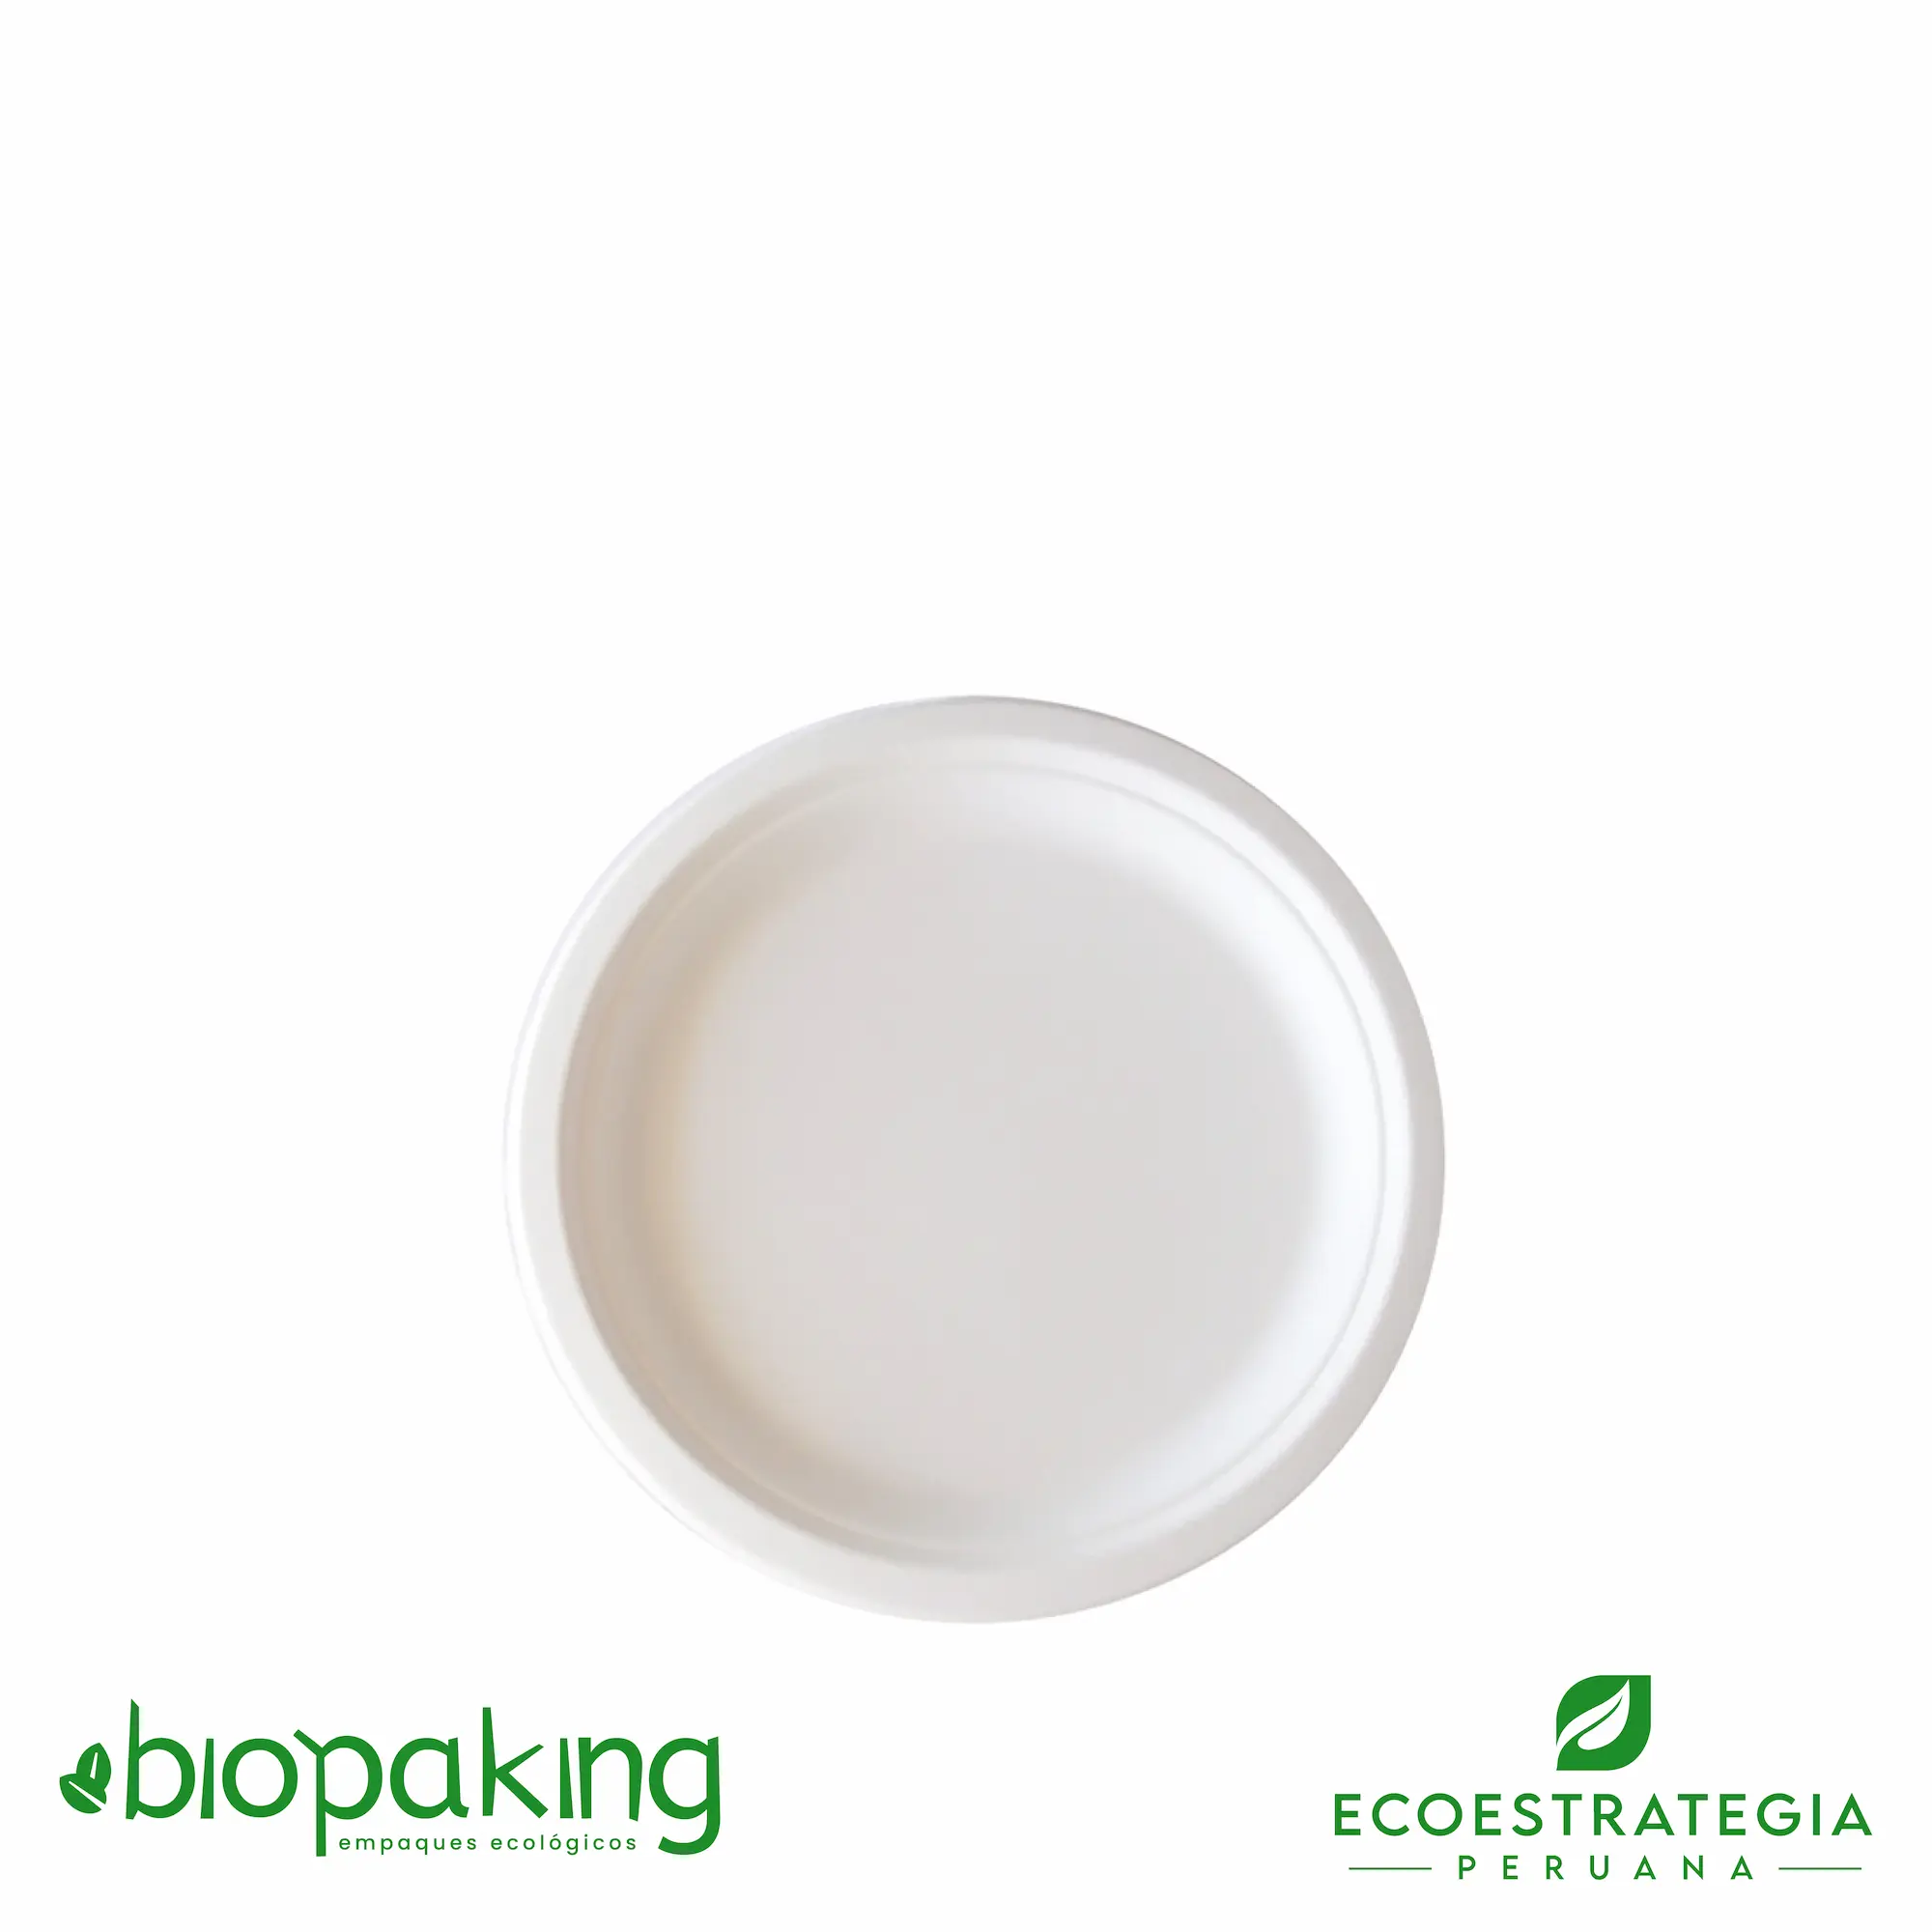 Es un plato biodegradable de 18 cm, fabricado a base de fibra de caña de azúcar. Apto para entradas, postres, tortas, hamburguesa y más. Contamos con stock de platos biodegradables, también los encuentras en las medidas. La mejor calidad en descartables biodegradables.